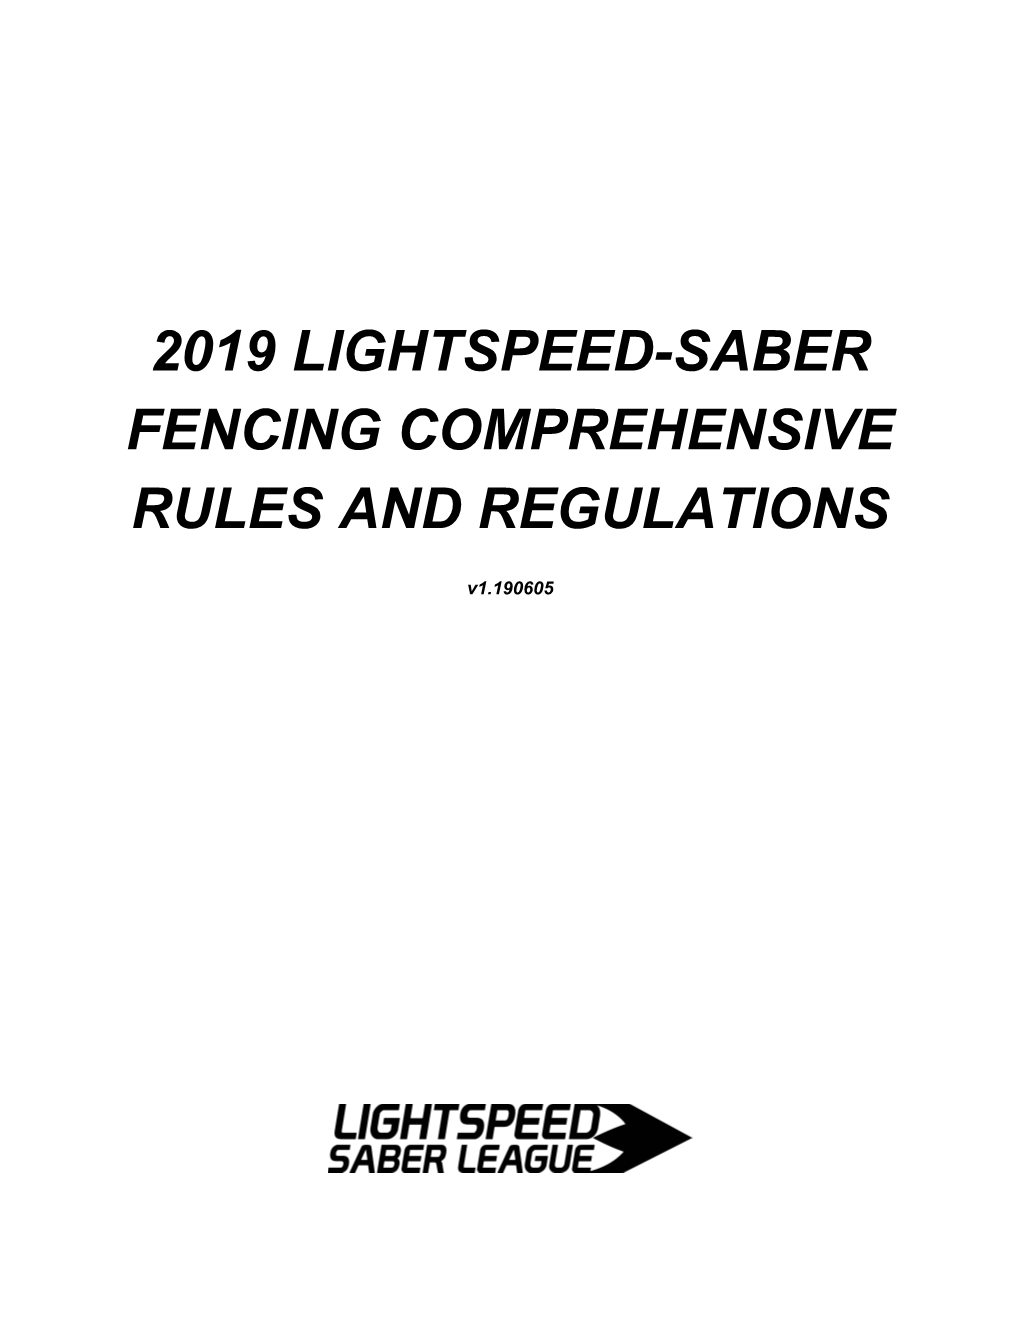 2019 Lightspeed-Saber Fencing Comprehensive Rules and Regulations